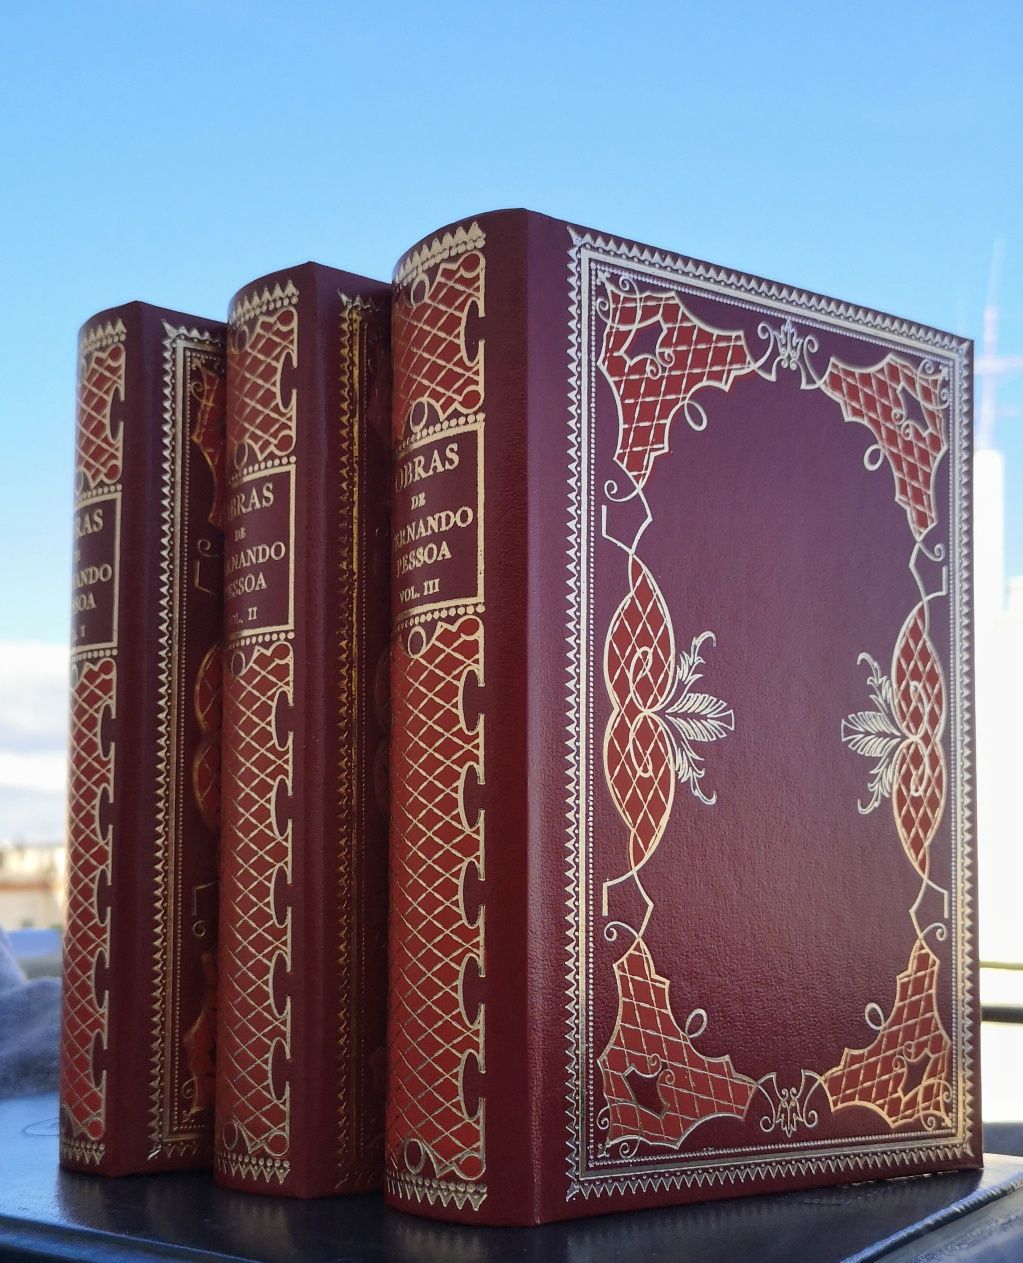 Fernando Pessoa - 3 volumes NOVOS, papel bíblia